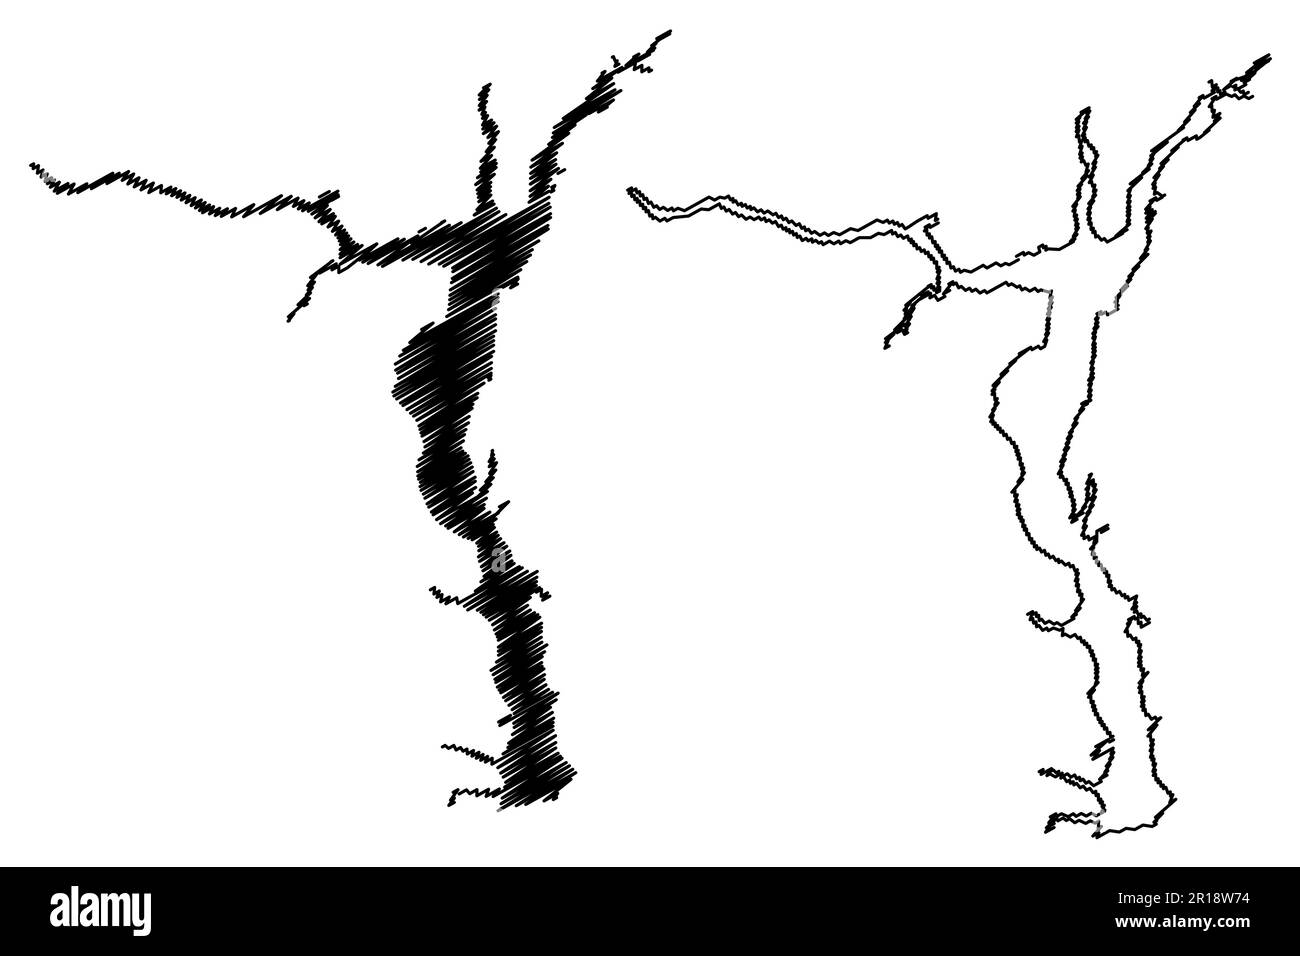 Réservoir Gorky (Russie, Fédération de Russie, Volga River) carte illustration vectorielle, esquisse griffée carte de la station hydroélectrique Gorky ou de la mer Gorky Illustration de Vecteur